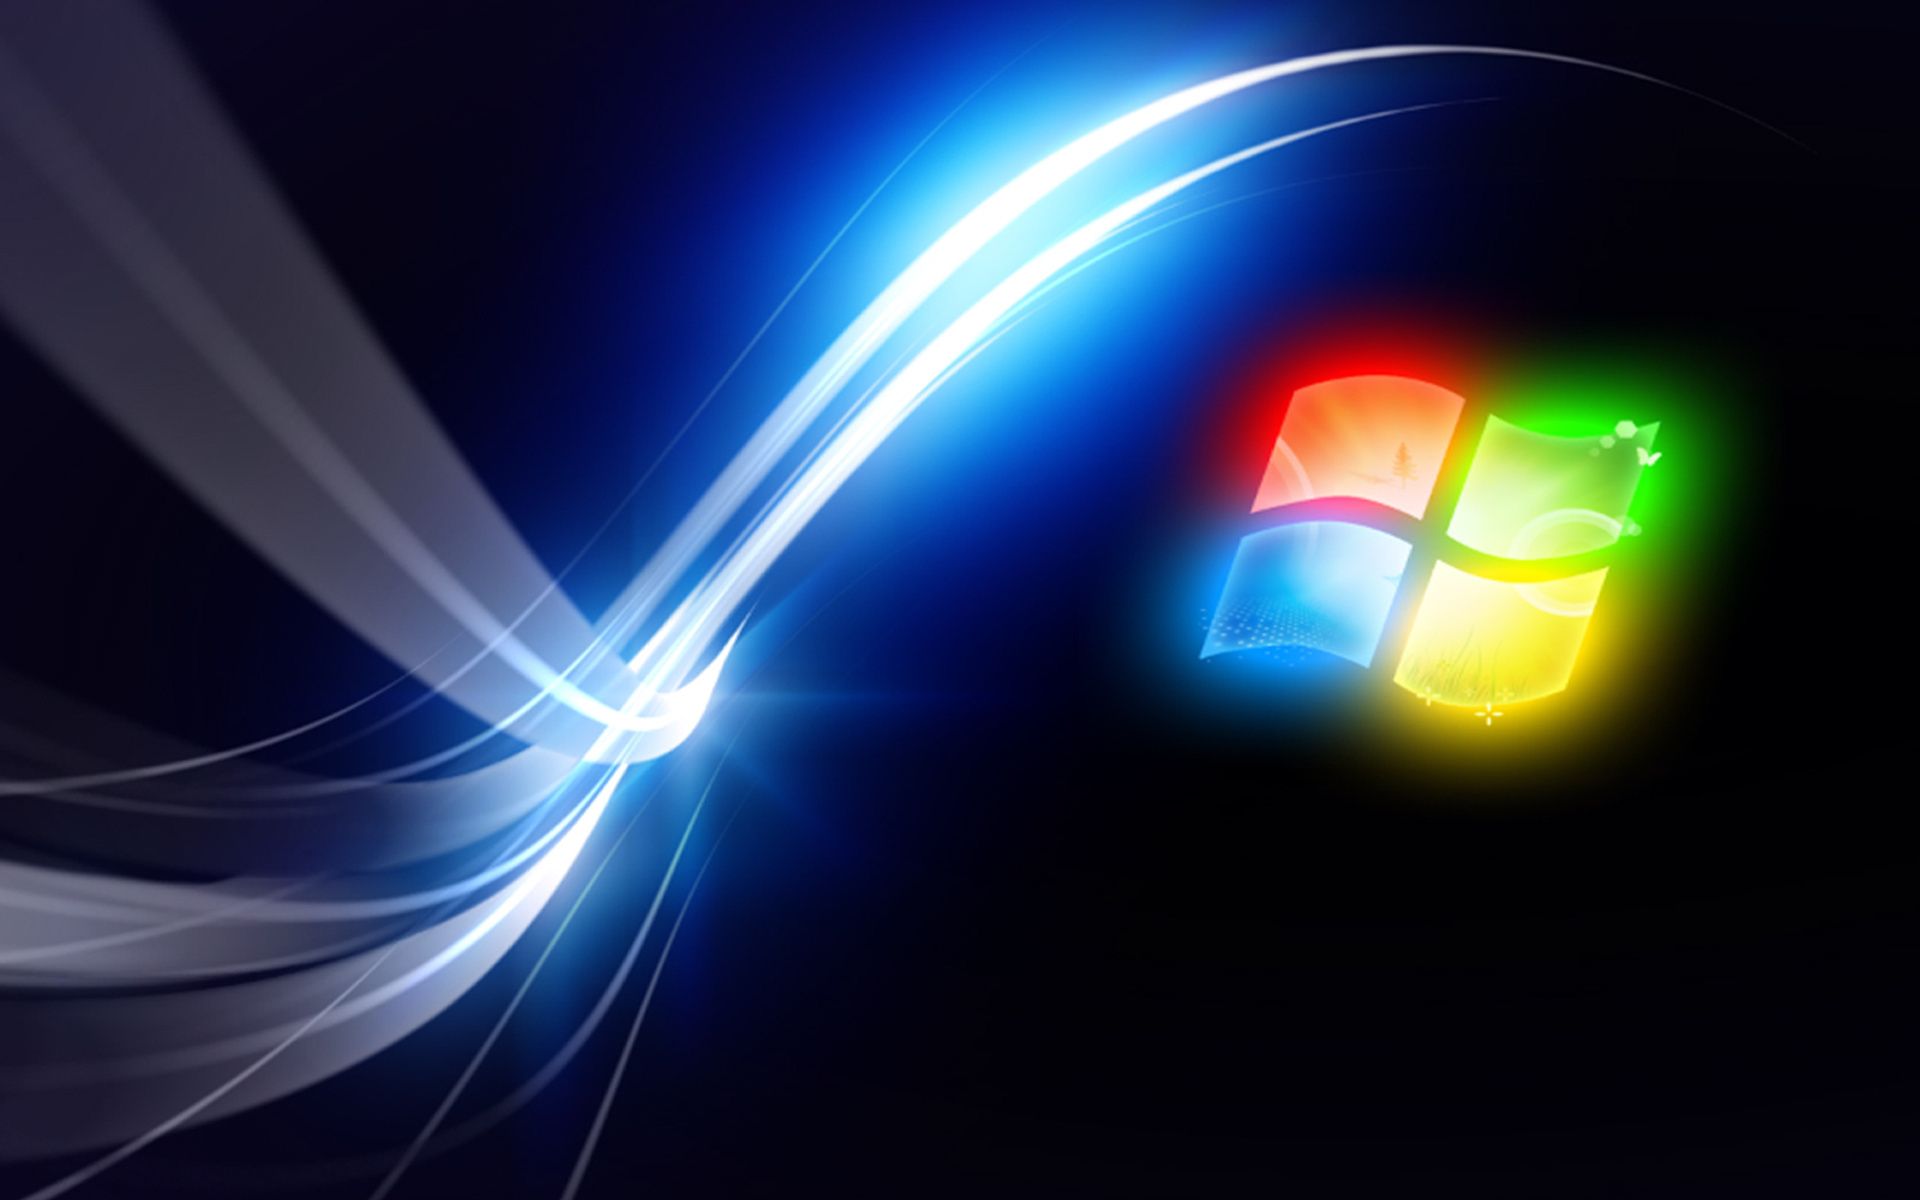  Windows Hintergrundbild 1920x1200. Hintergrundbild für Handys: Windows, Hintergrund, Marken, Logos, 20851 Bild kostenlos herunterladen